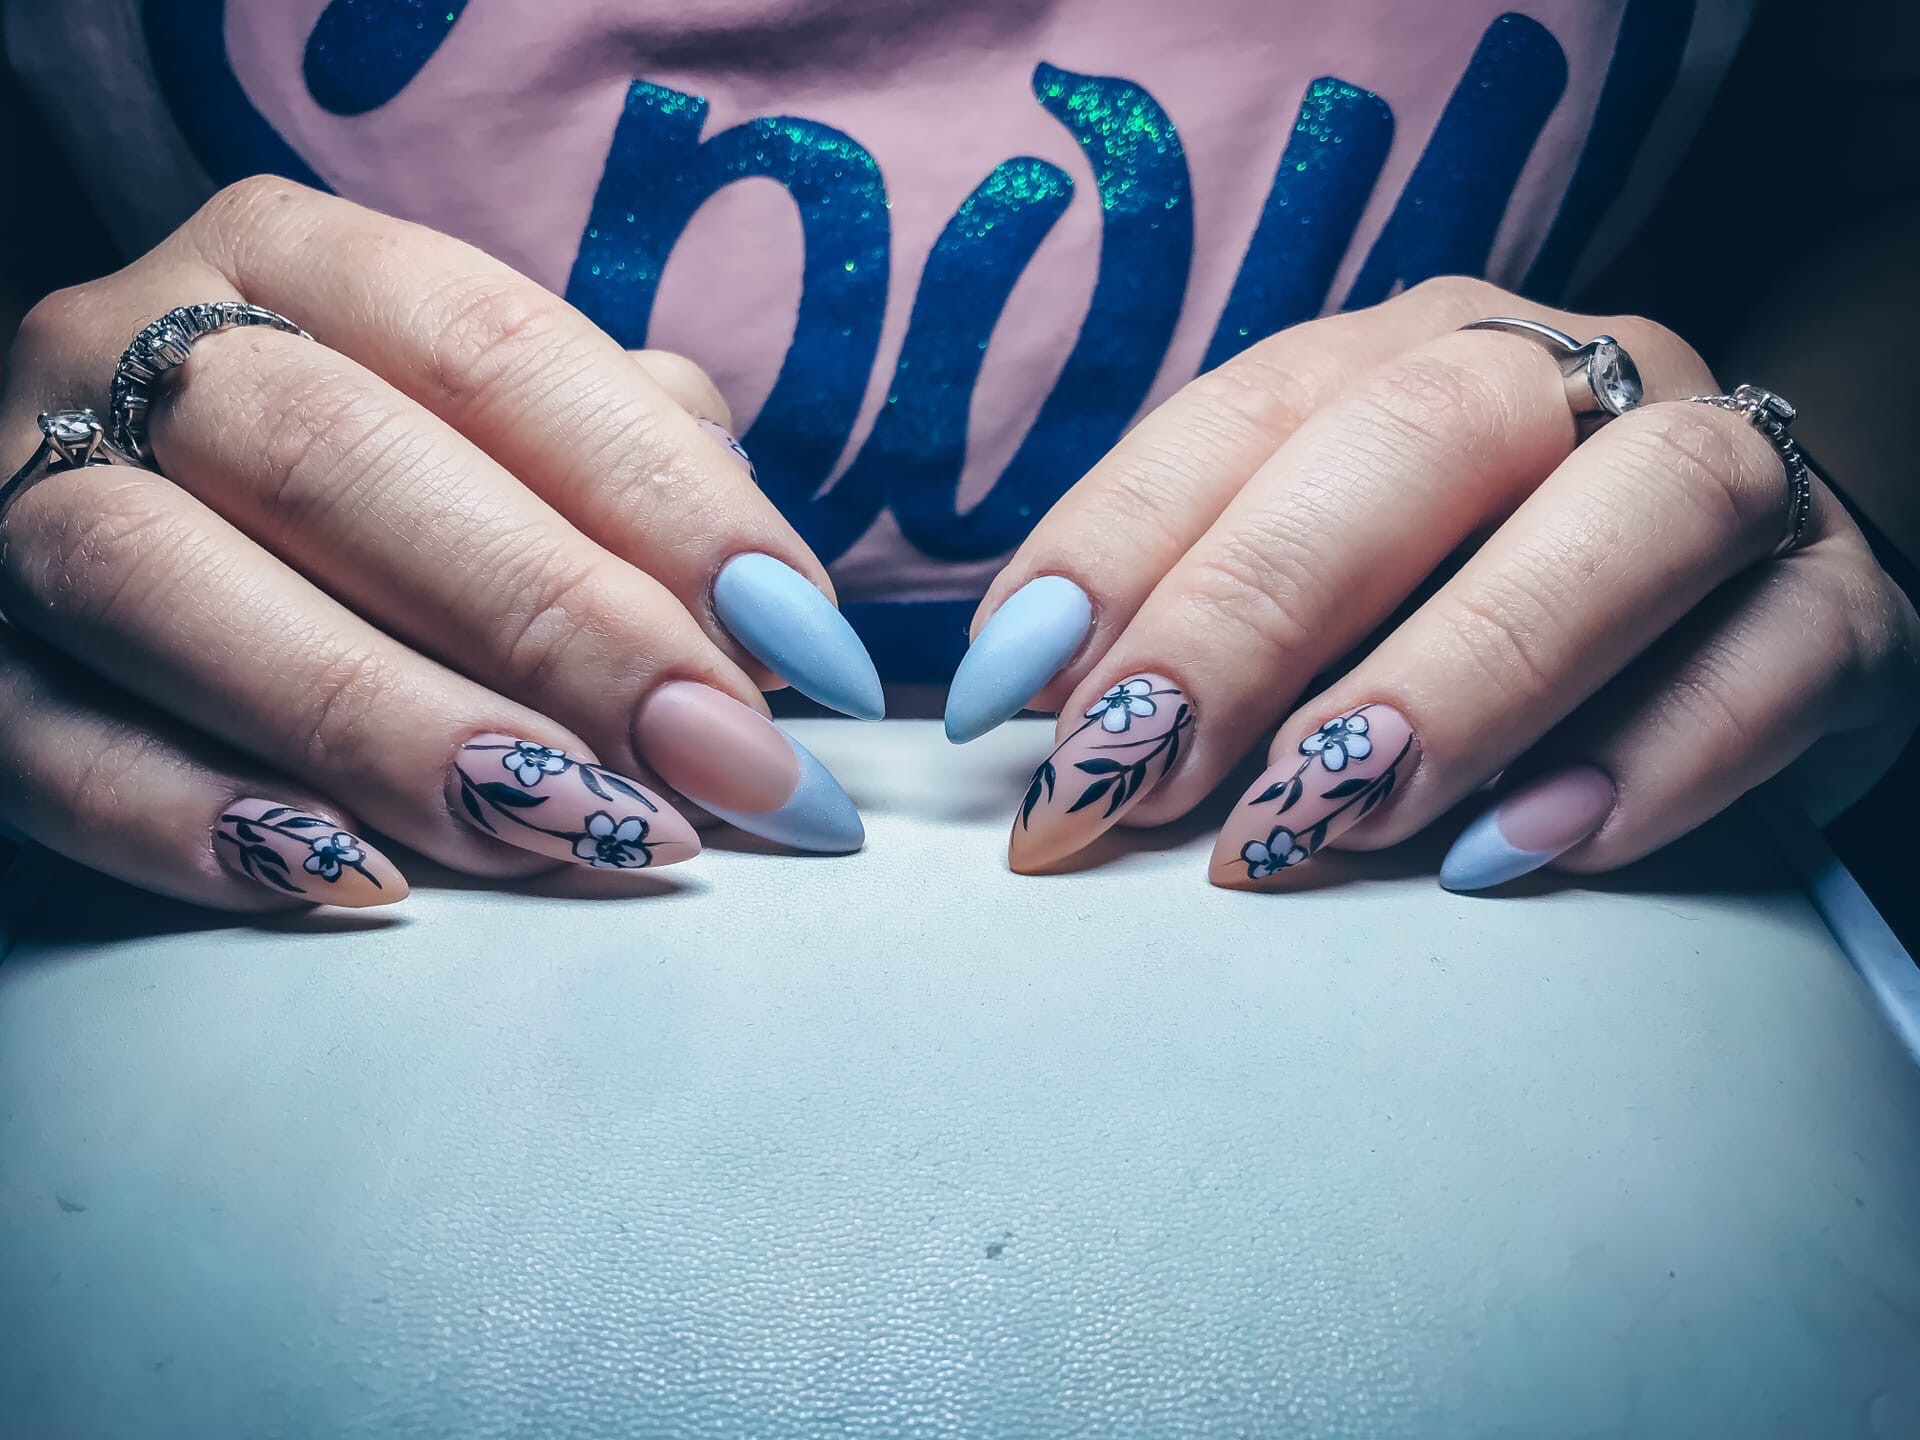 Маникюр с цветочным рисунком и френч-дизайном в голубом цвете на длинные ногти.